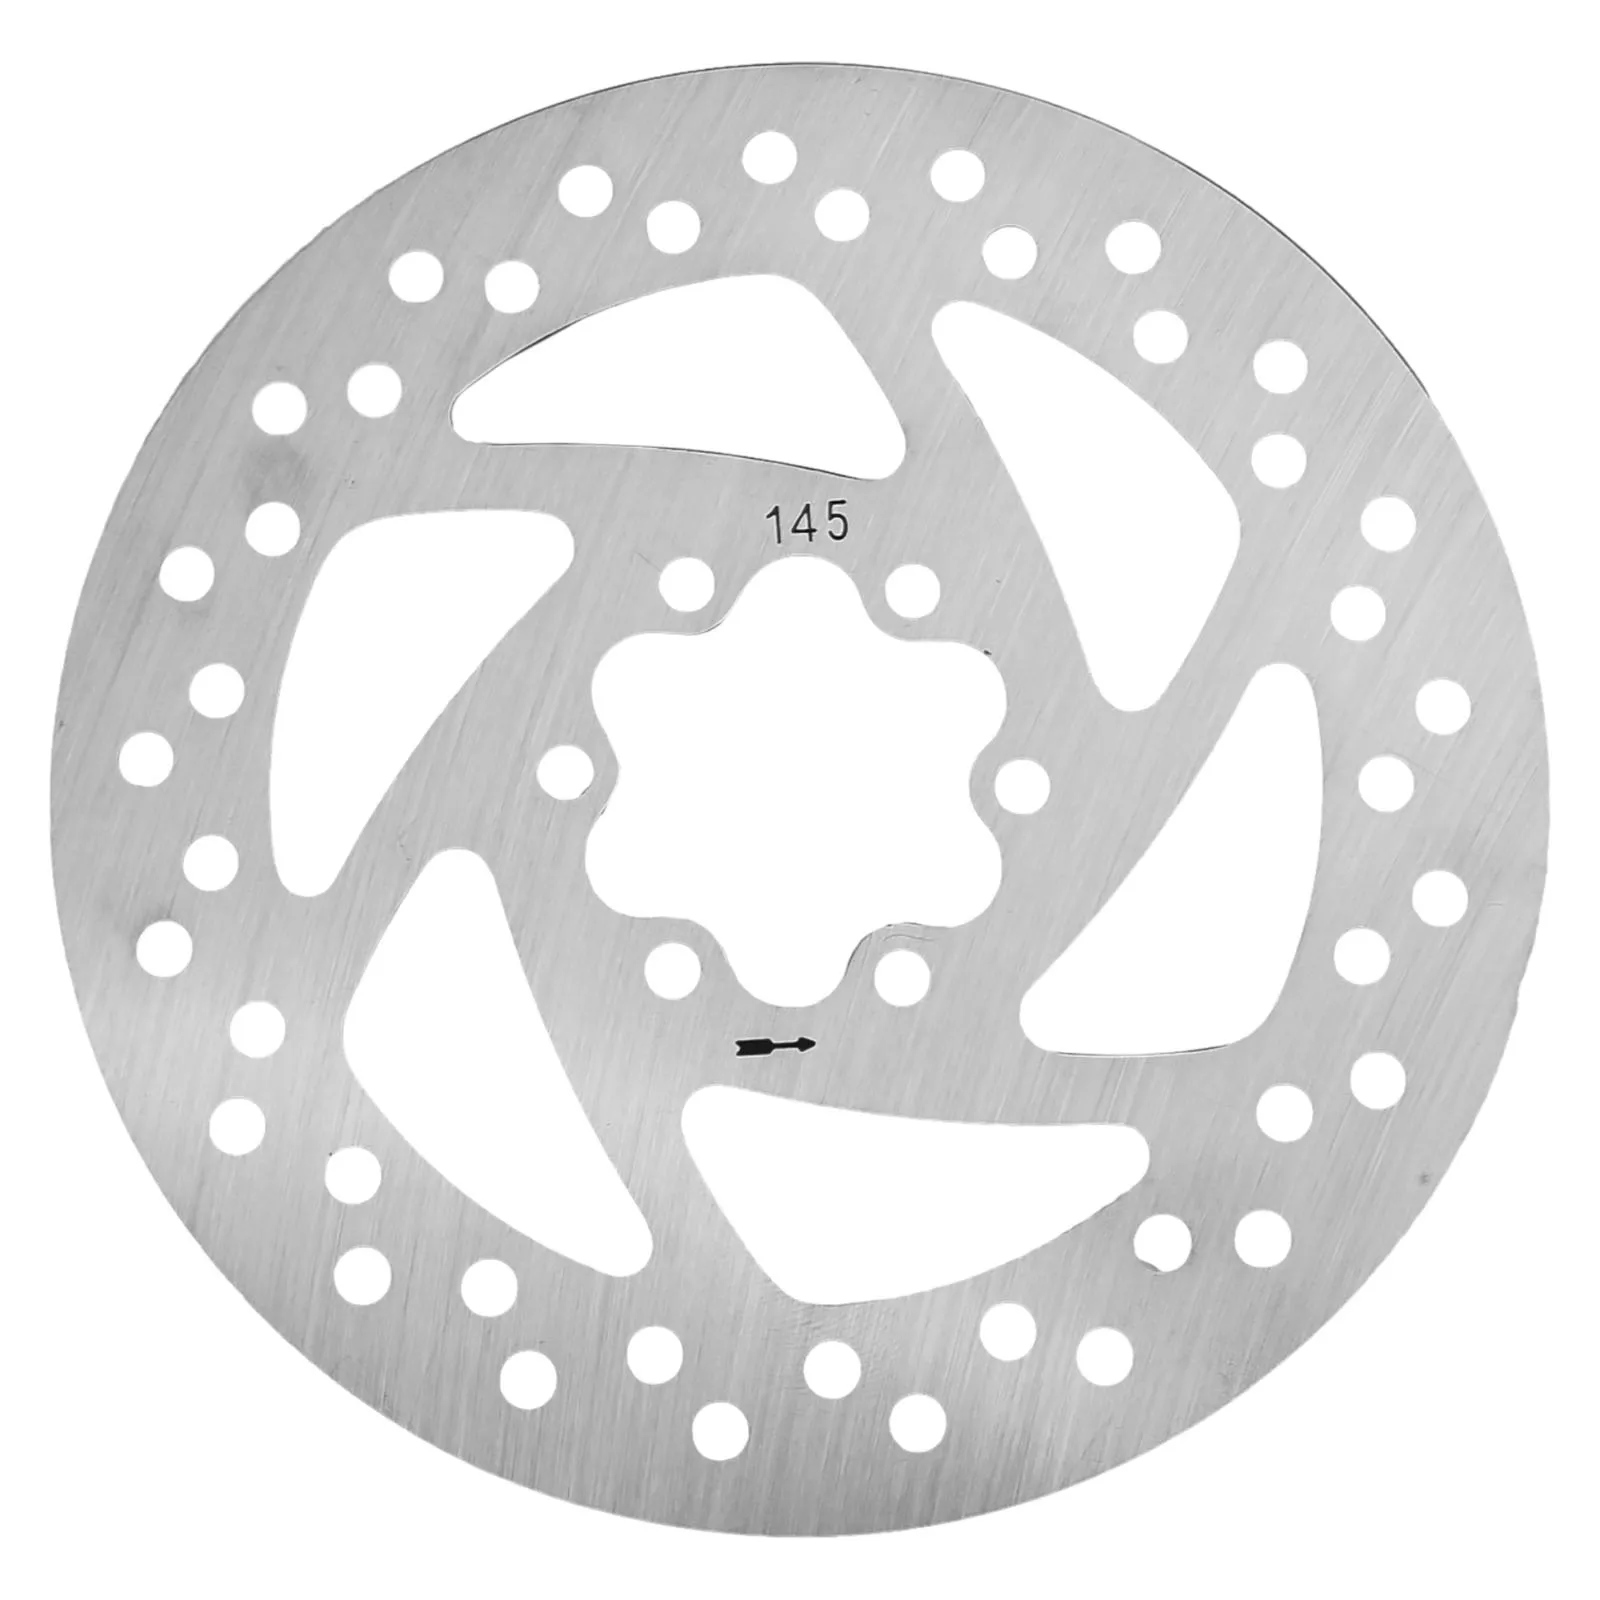 Повысьте безопасность езды благодаря 145-миллиметровому дисковому тормозному диску для электрических скутеров Плавное и отзывчивое торможение